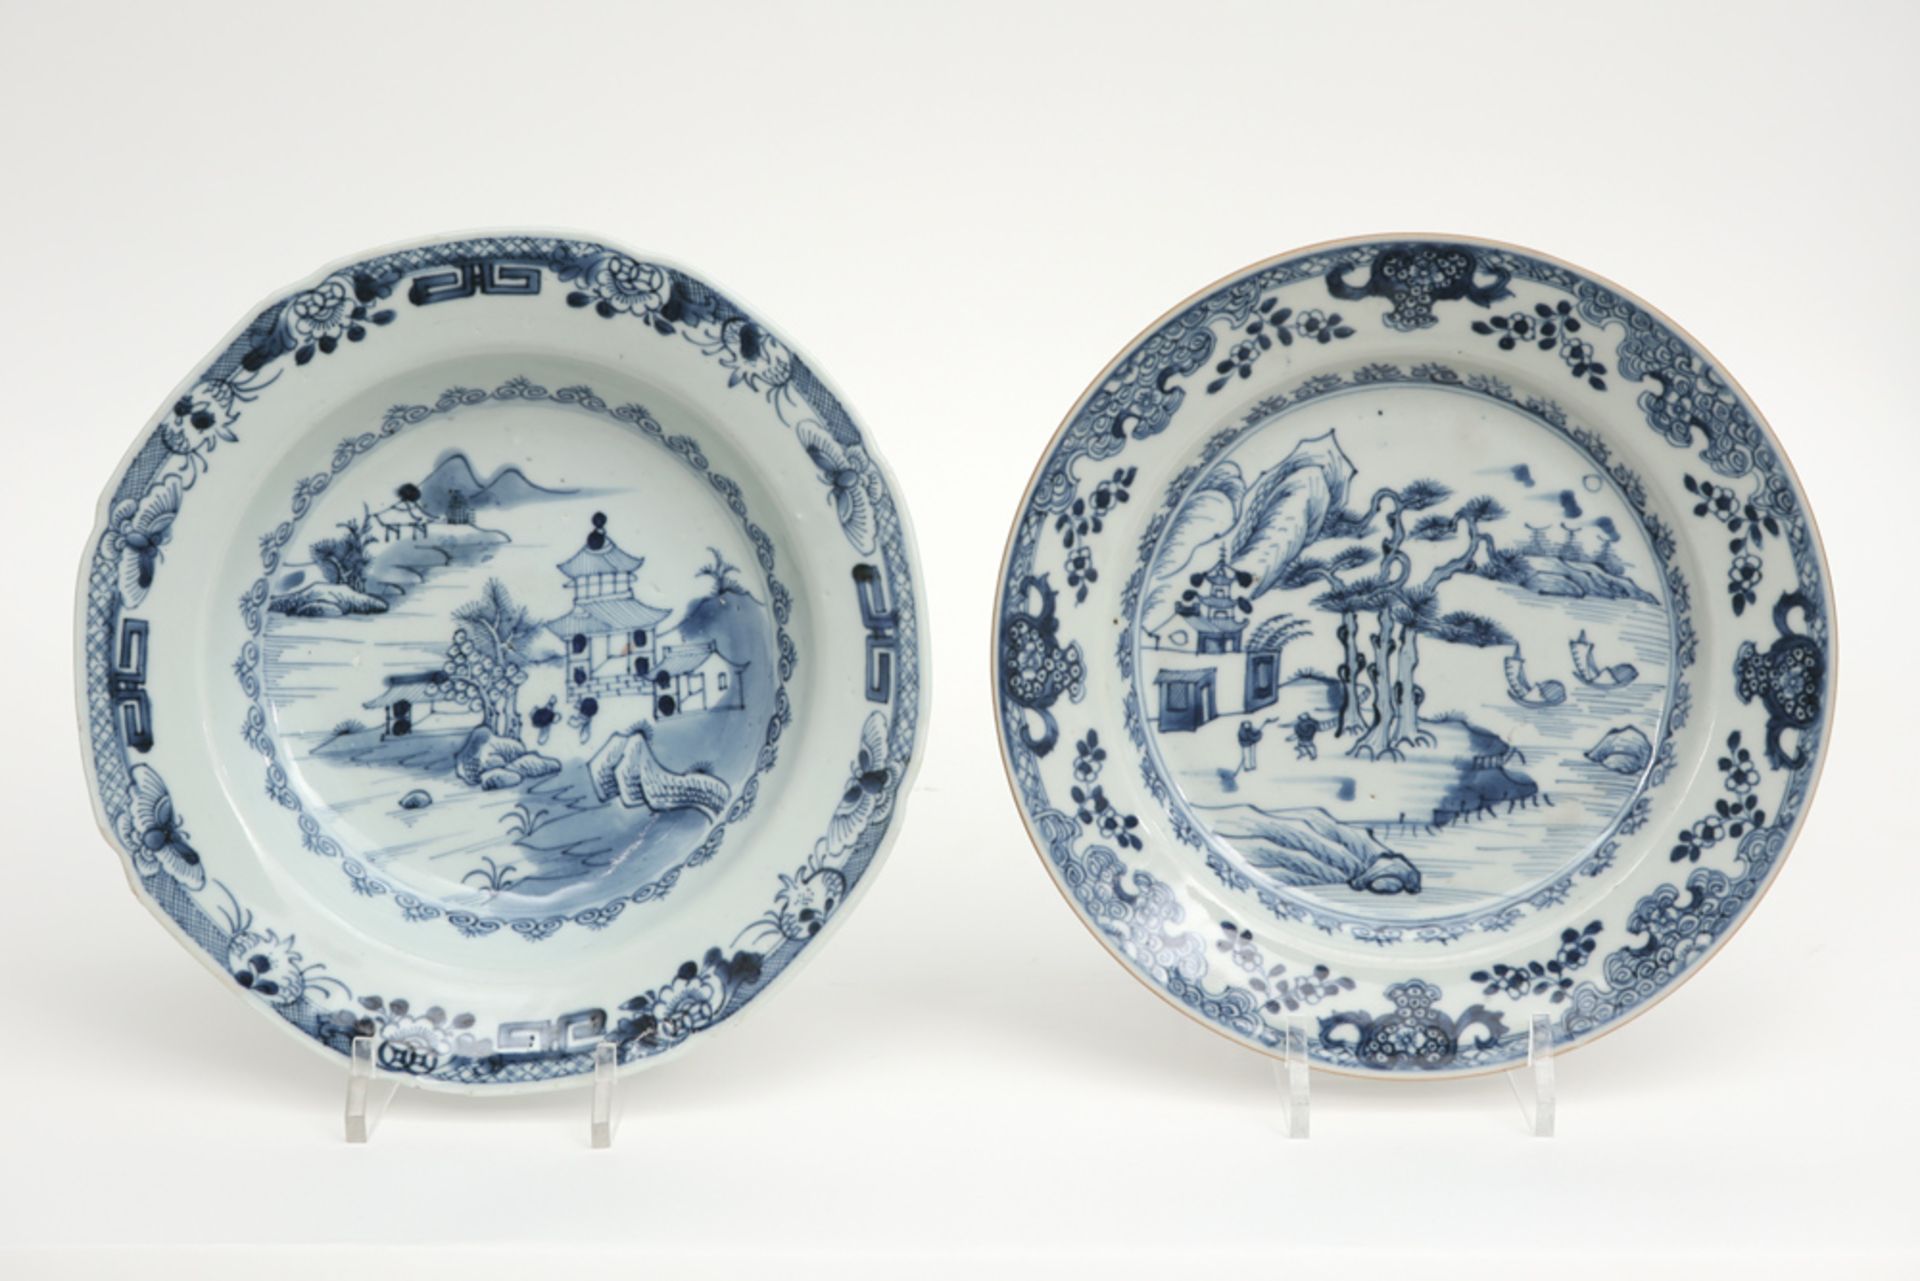 Twee achttiende eeuwse Chinese borden in porselein met een blauwwit decor  -  diameters : 22,5 en 23